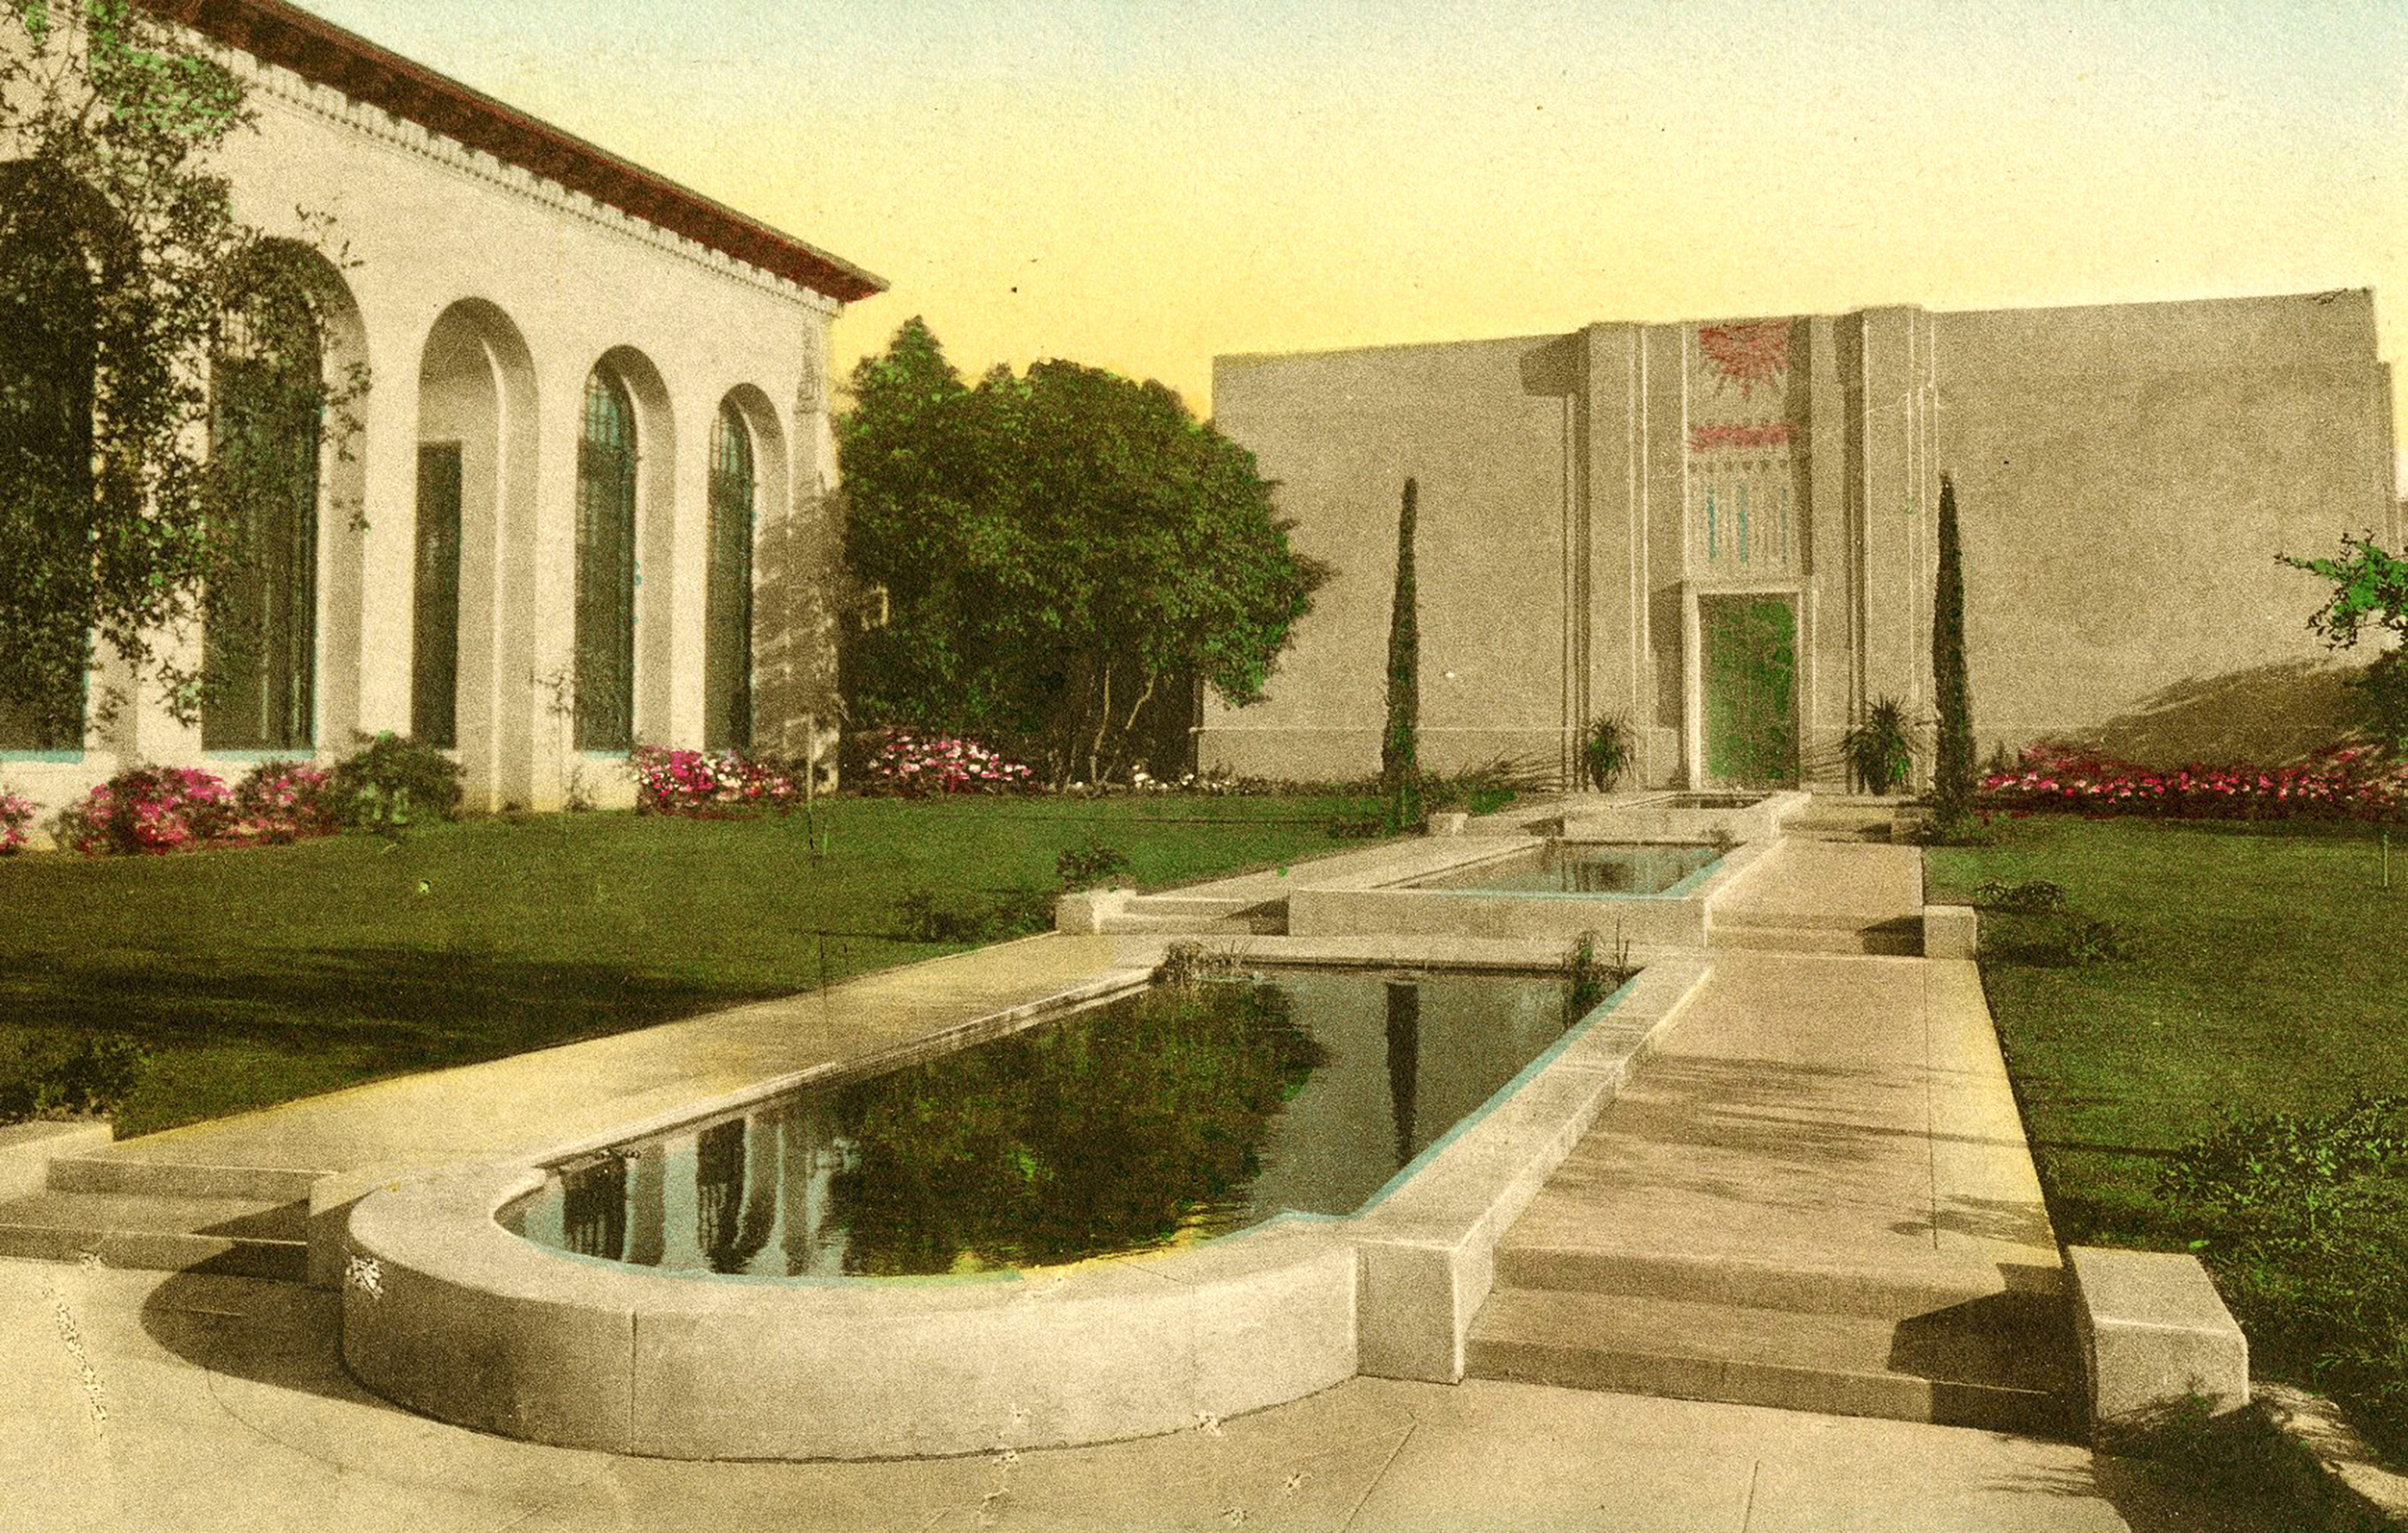 Faulkner Memorial Art Gallery, circa 1930